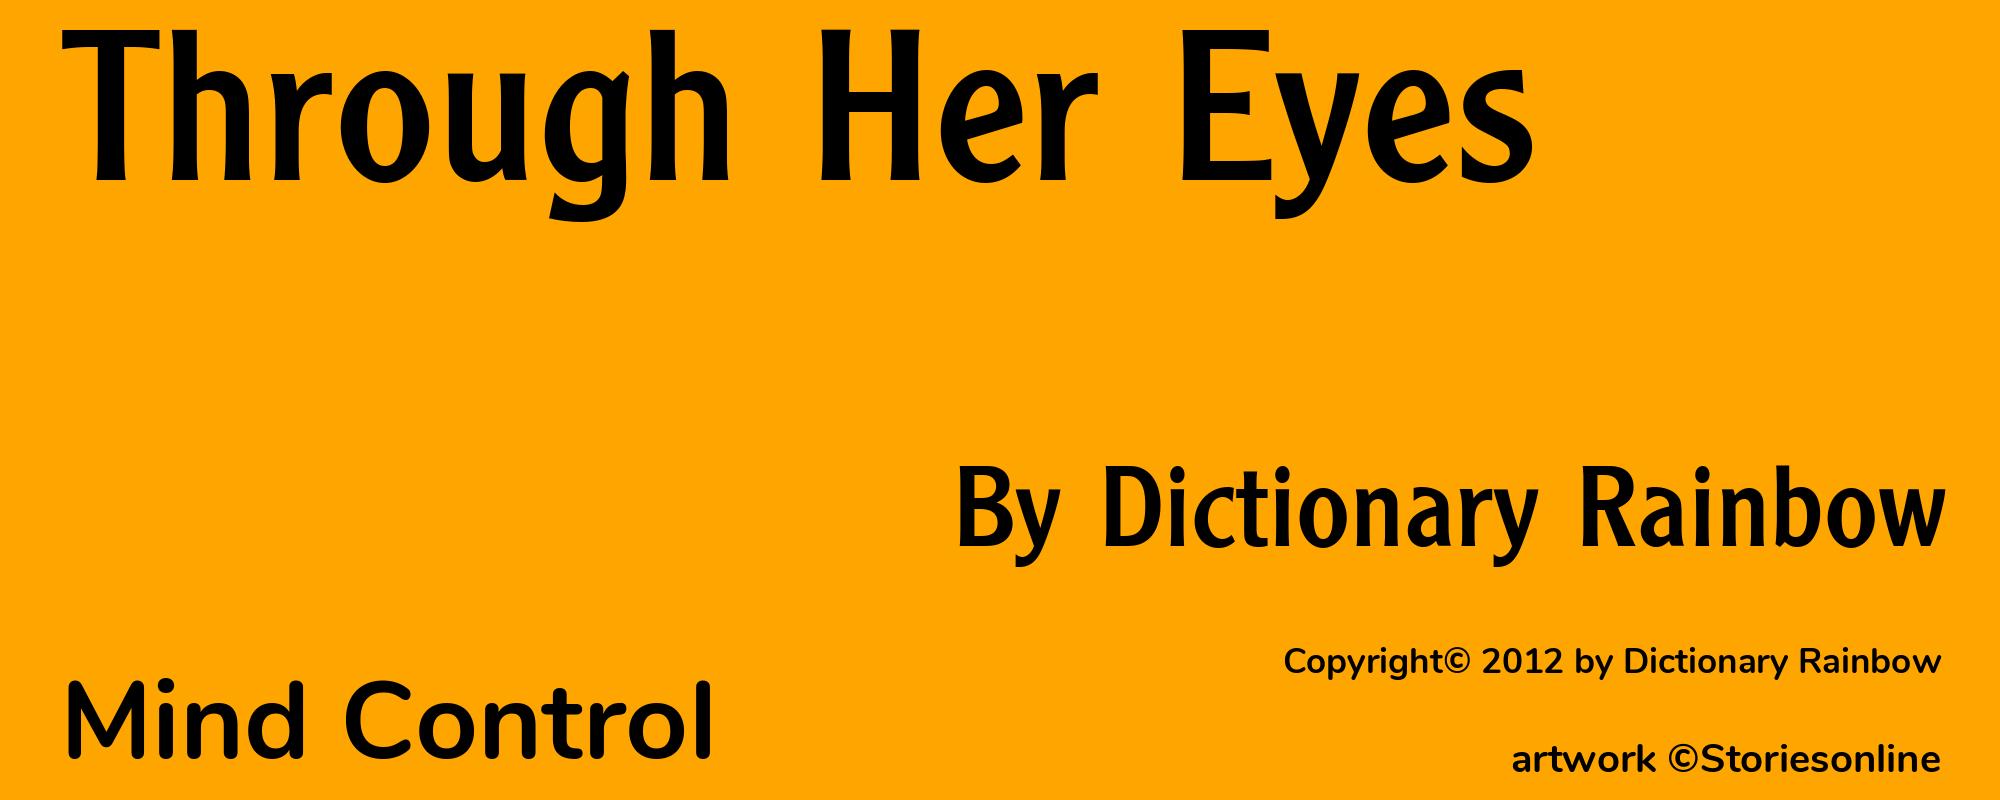 Through Her Eyes - Cover